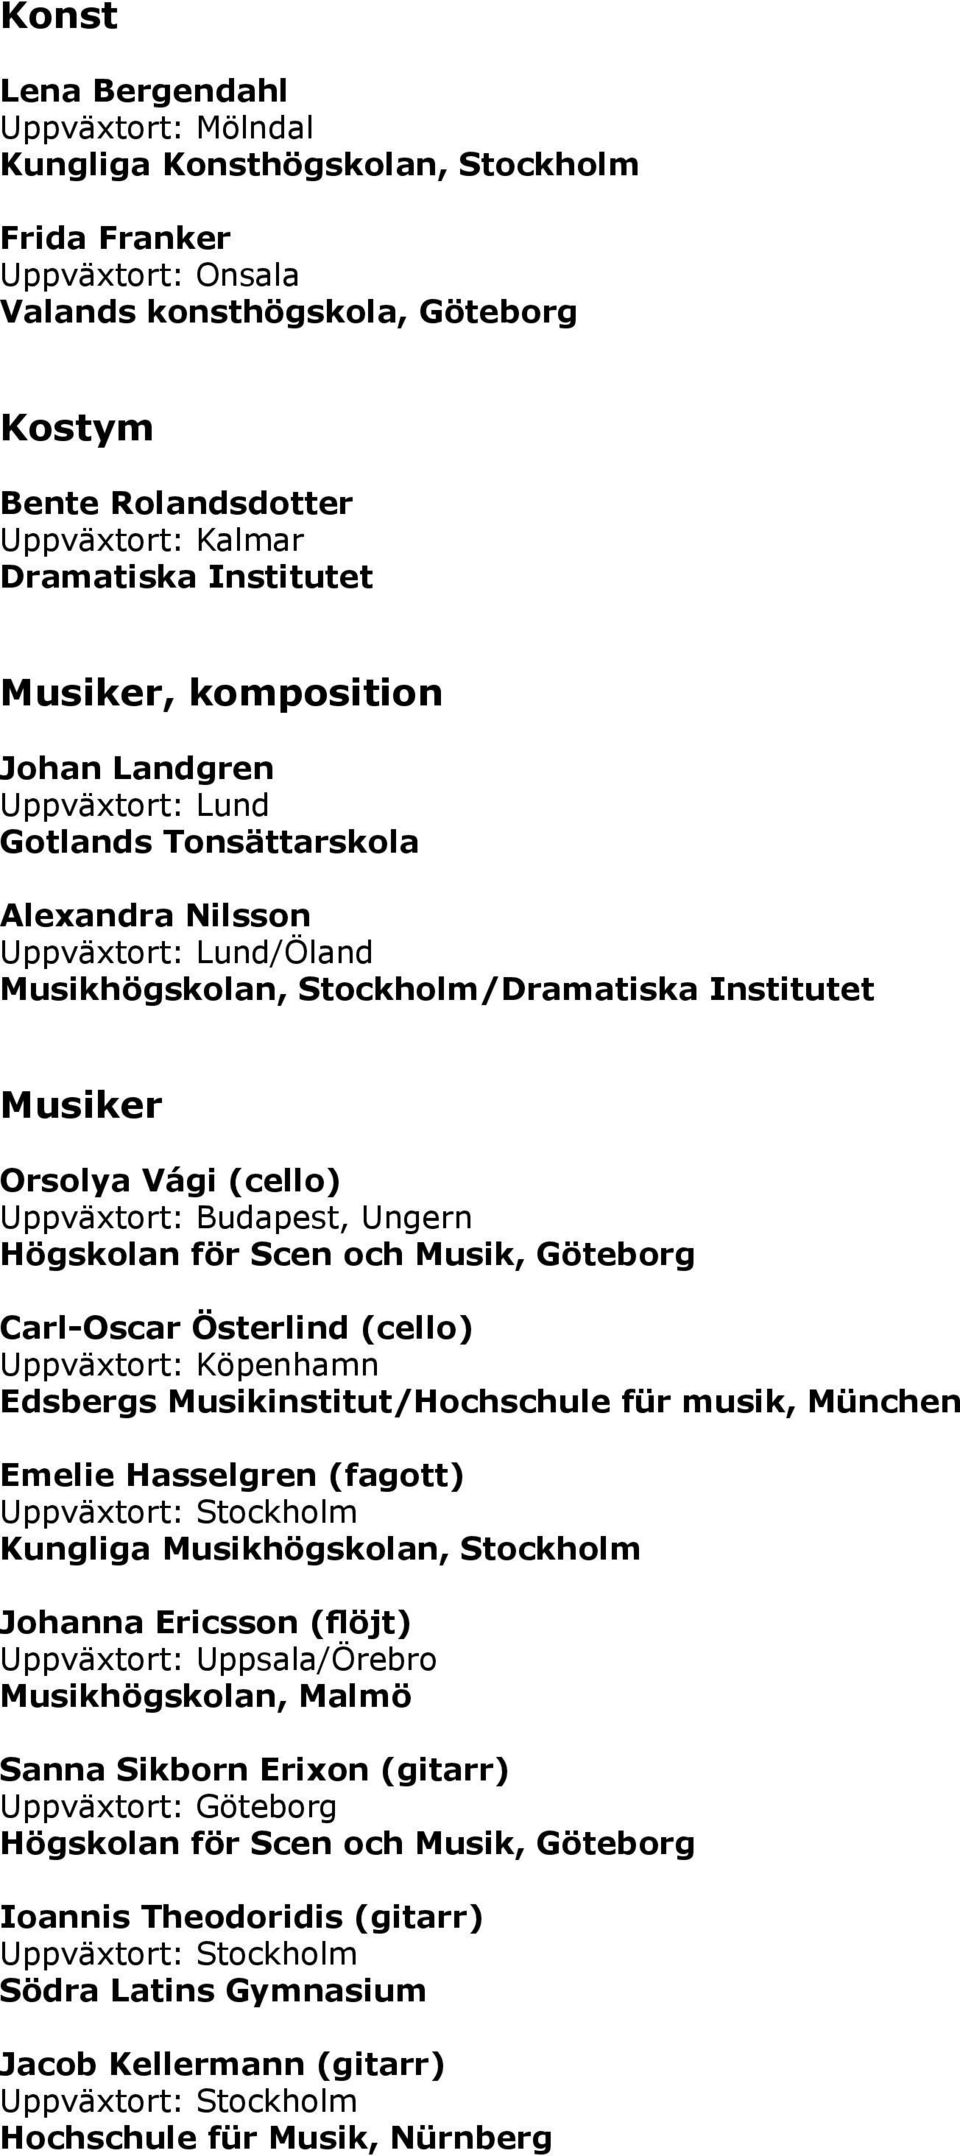 Budapest, Ungern Carl-Oscar Österlind (cello) Uppväxtort: Köpenhamn Edsbergs Musikinstitut/Hochschule für musik, München Emelie Hasselgren (fagott) Kungliga Musikhögskolan, Stockholm Johanna